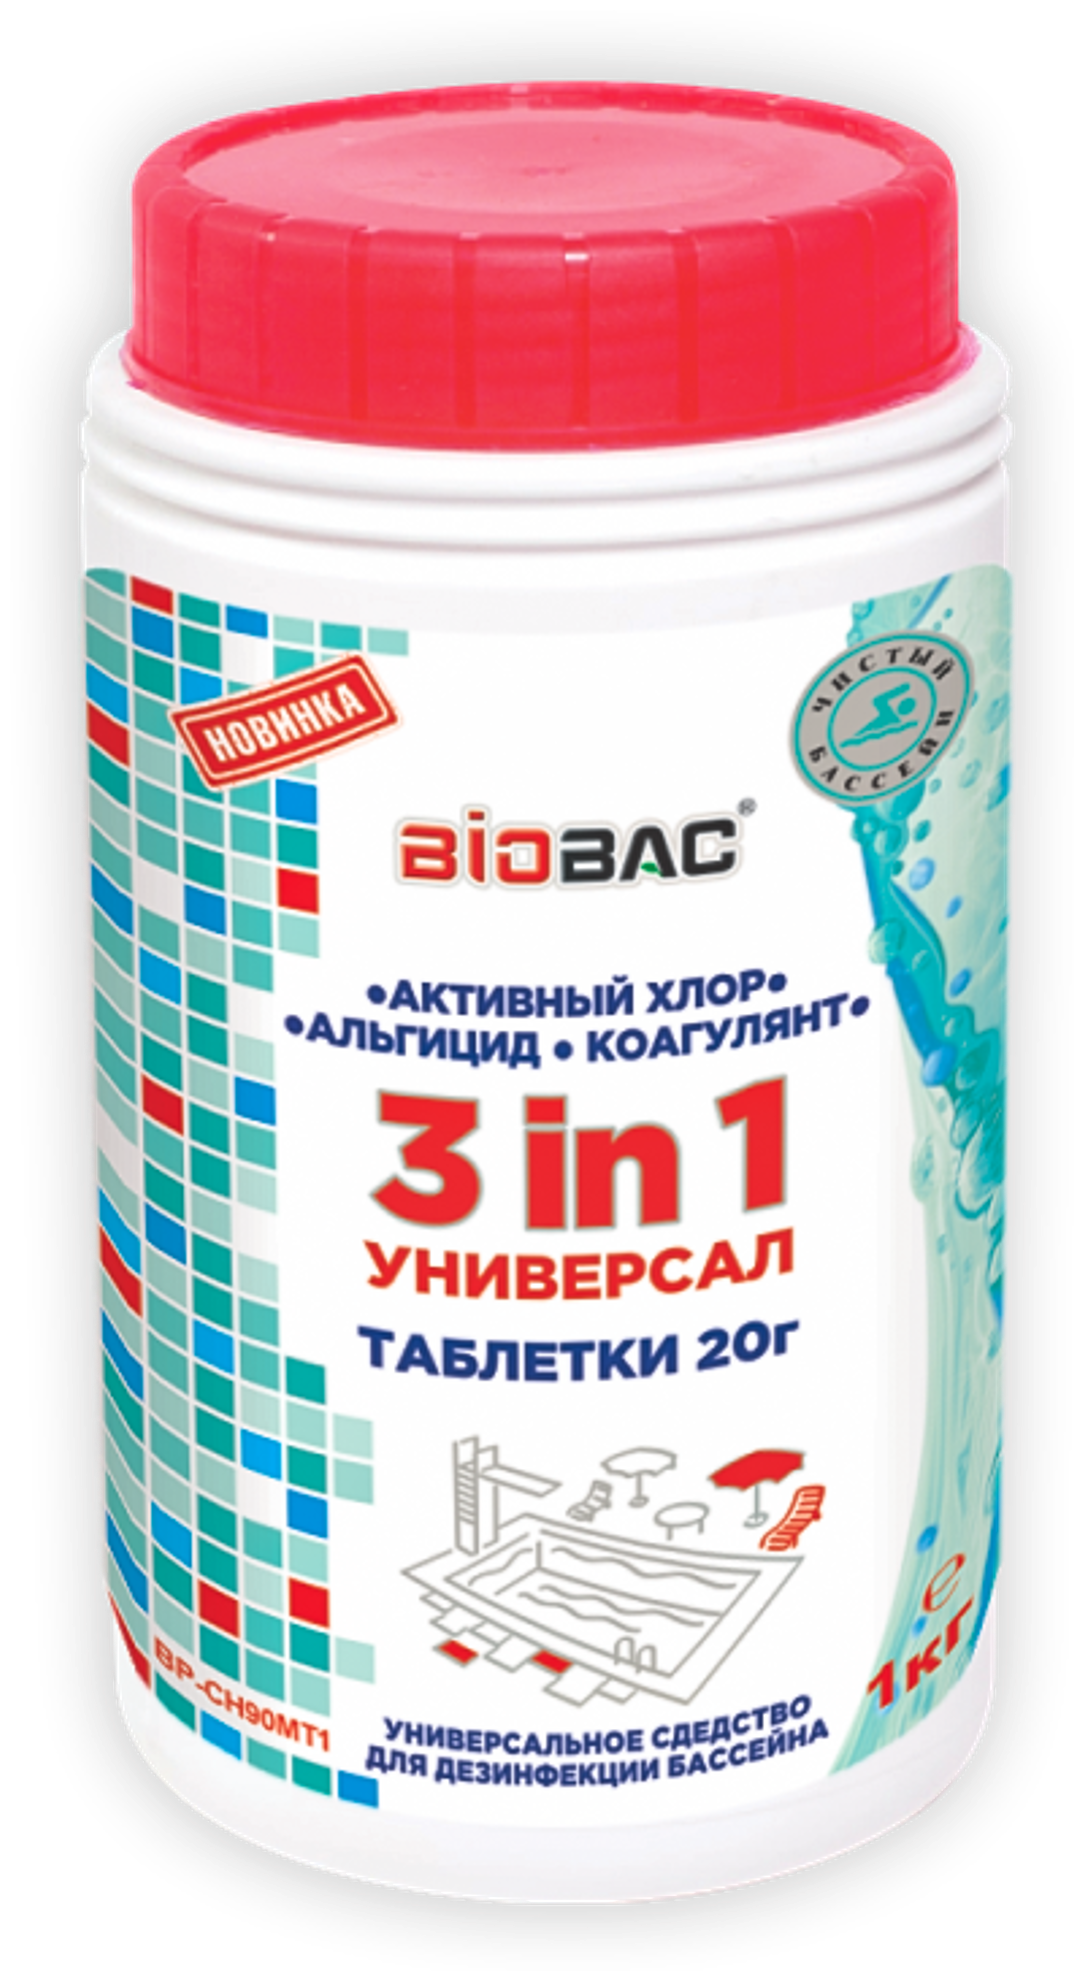 Универсальное средство для дезинфекции бассейнов Универсал 3 в 1 (хлор, альгицид, коагулянт таблетки 20 гр) Биобак